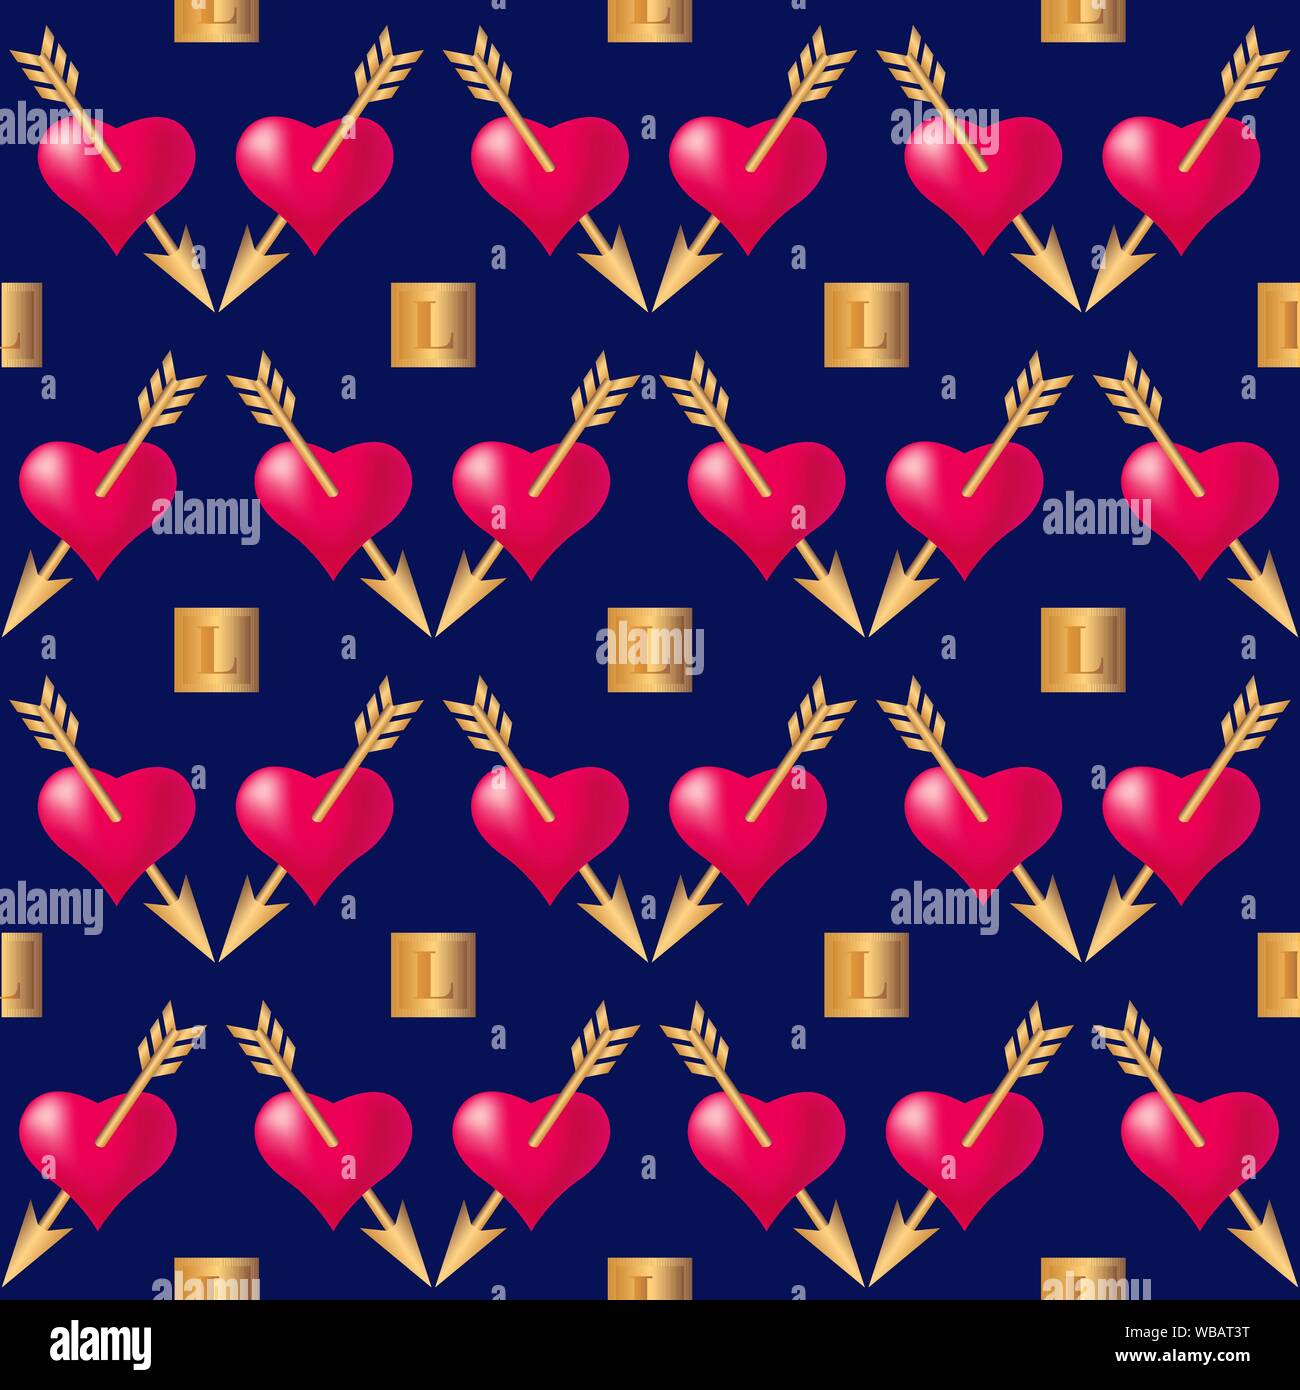 Motif de fond transparent avec des coeurs percés de flèches d'or. Valentines Day holidays typographie. Vector EPS10. Illustration de Vecteur